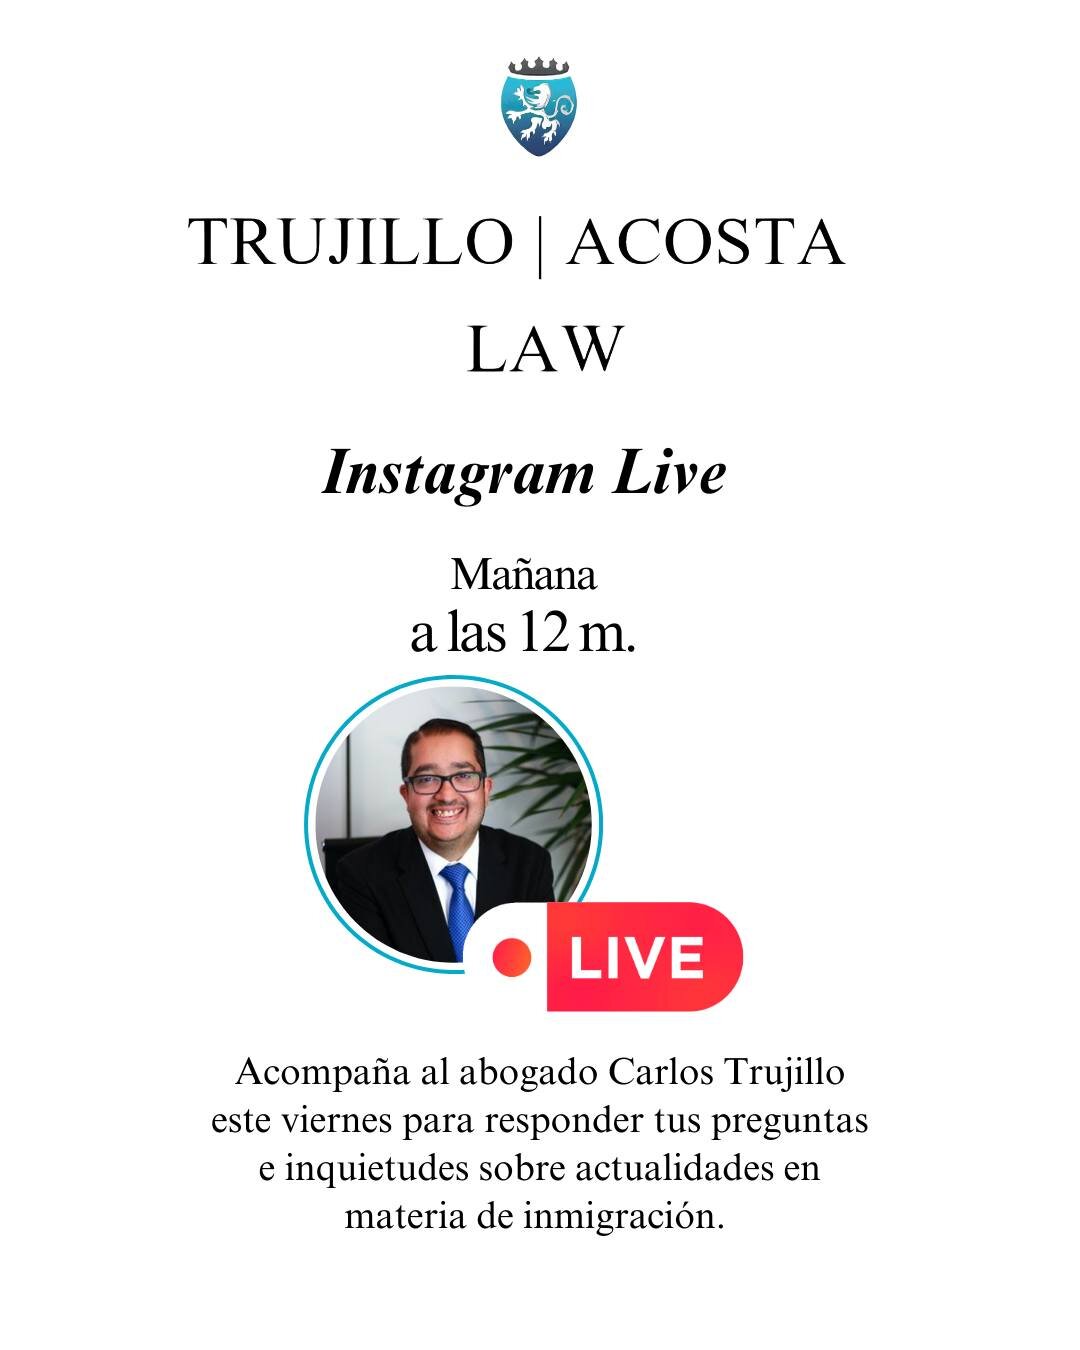 🔵 Acompa&ntilde;a al abogado Carlos Trujillo ma&ntilde;ana a las 12 m. en el Instagram LIVE para responder tus preguntas sobre las actualidades en materia de inmigraci&oacute;n. Deja tu pregunta en la cajita de preguntas en nuestras historias.

🔵 J